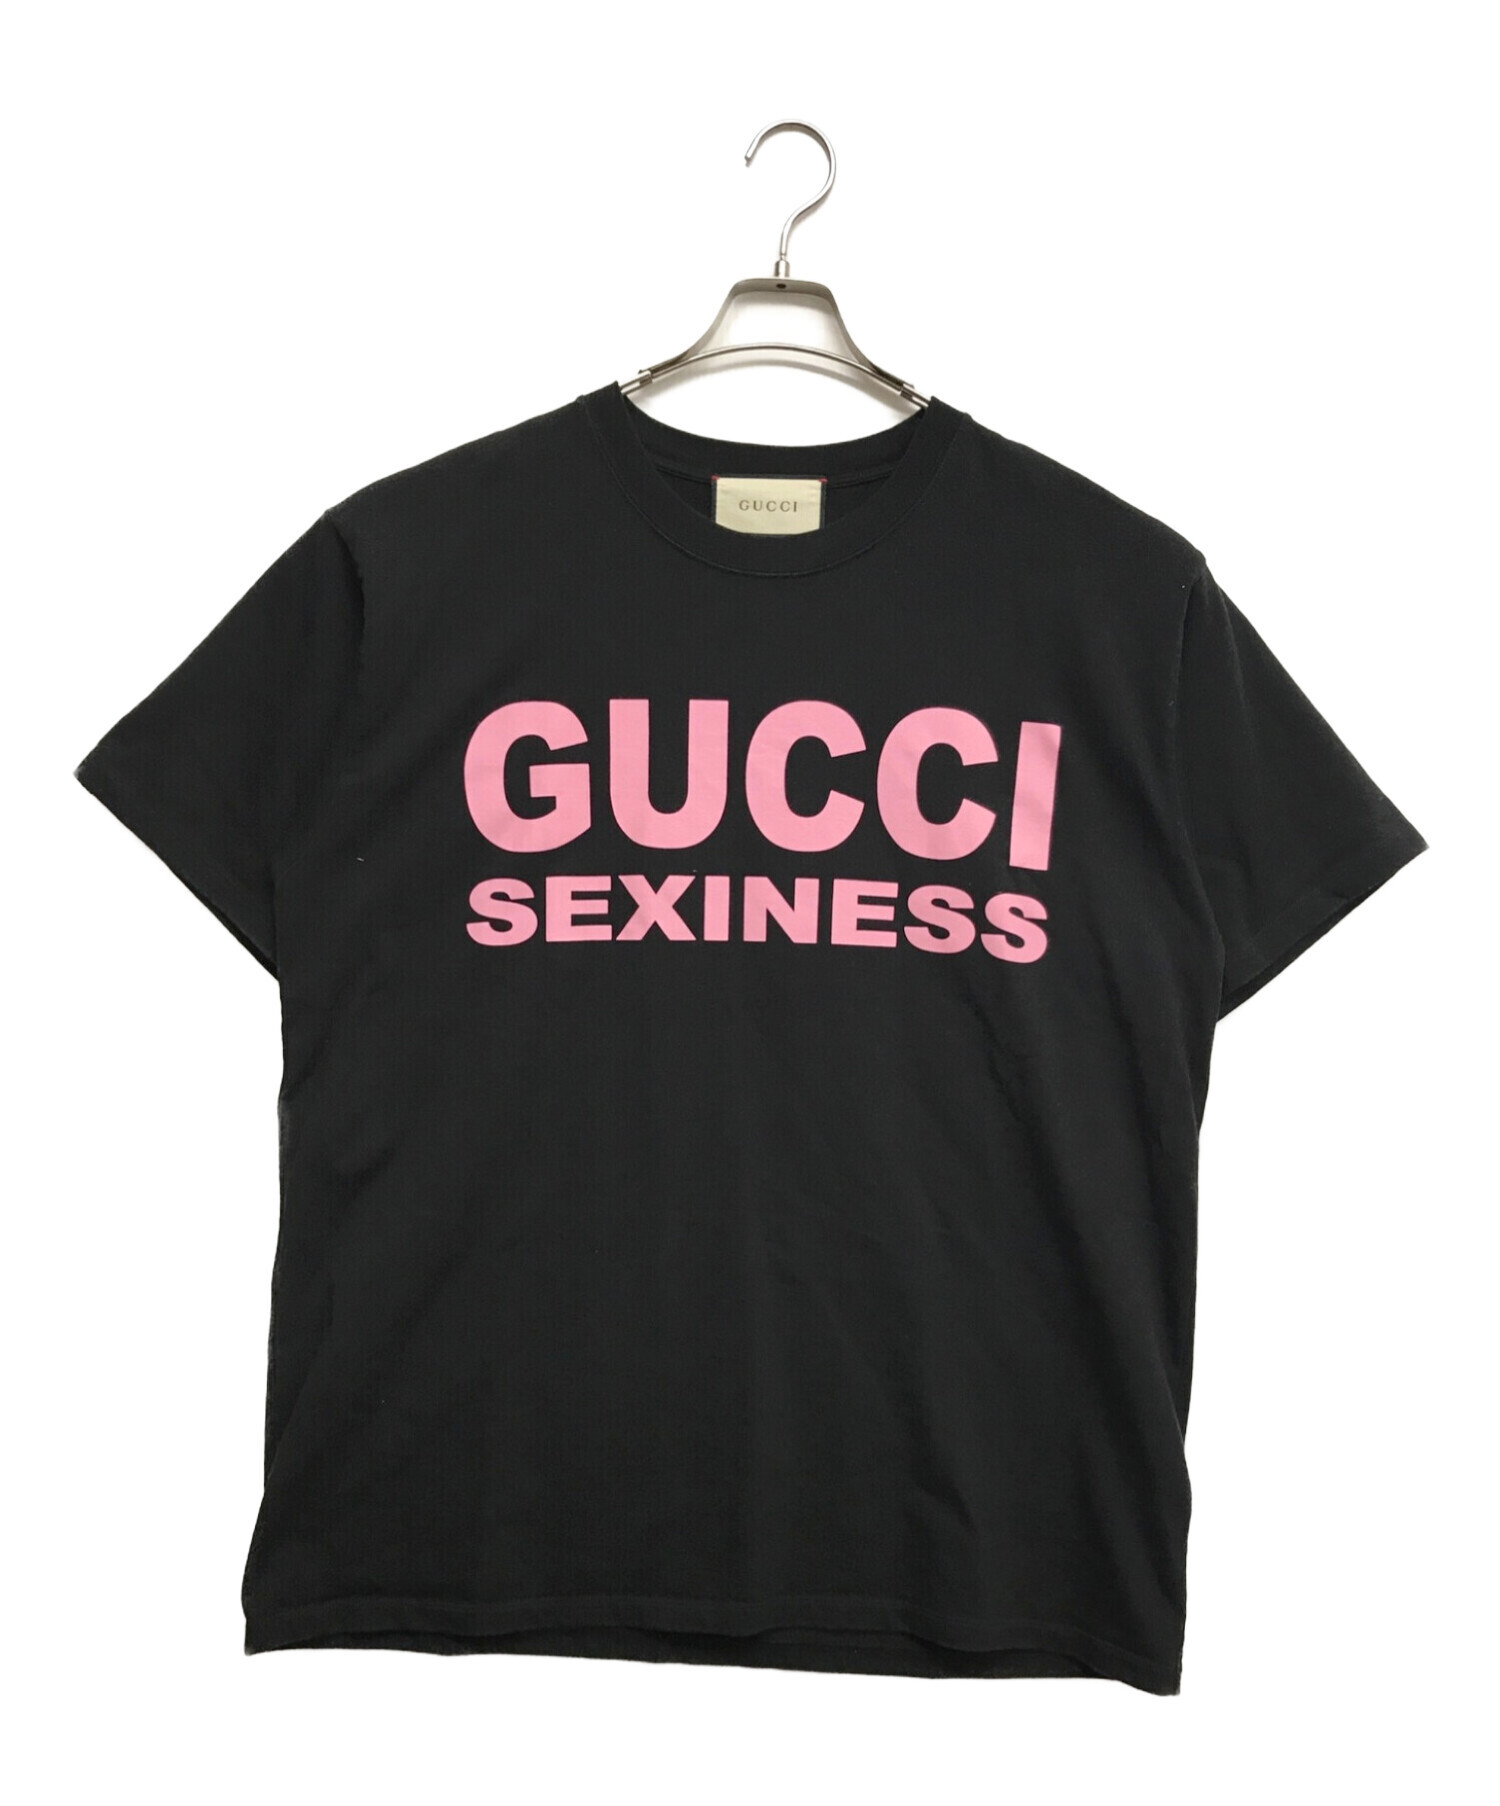 GUCCI (グッチ) SEXINESSプリントTシャツ ブラック サイズ:M